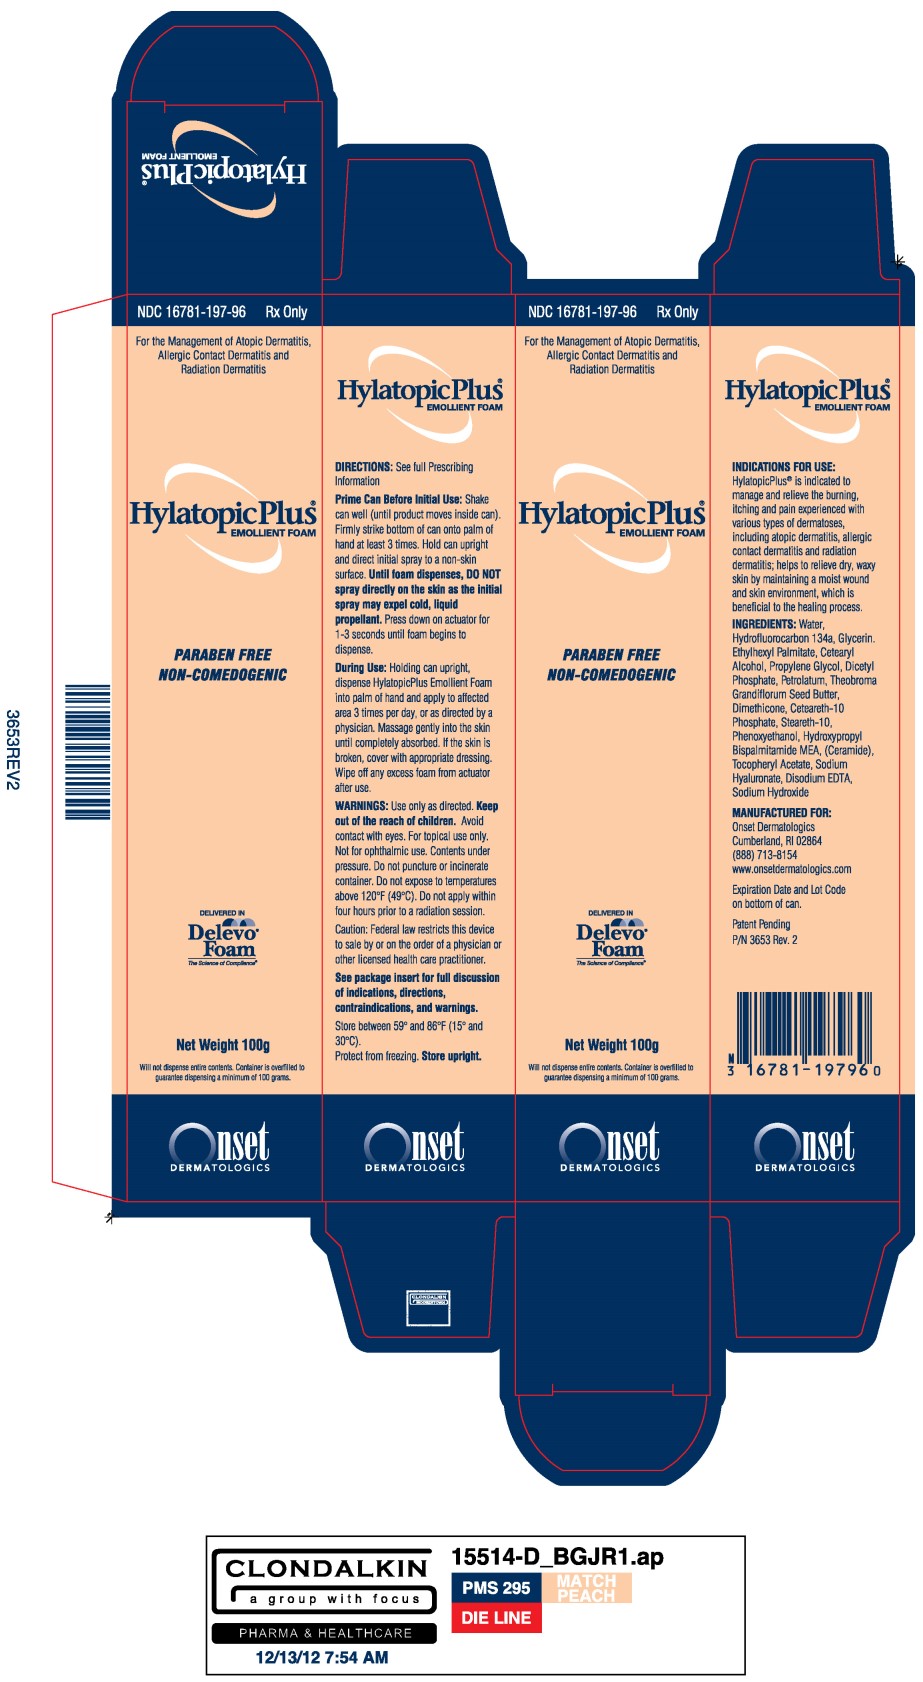 HylatopicPlus 100g Label